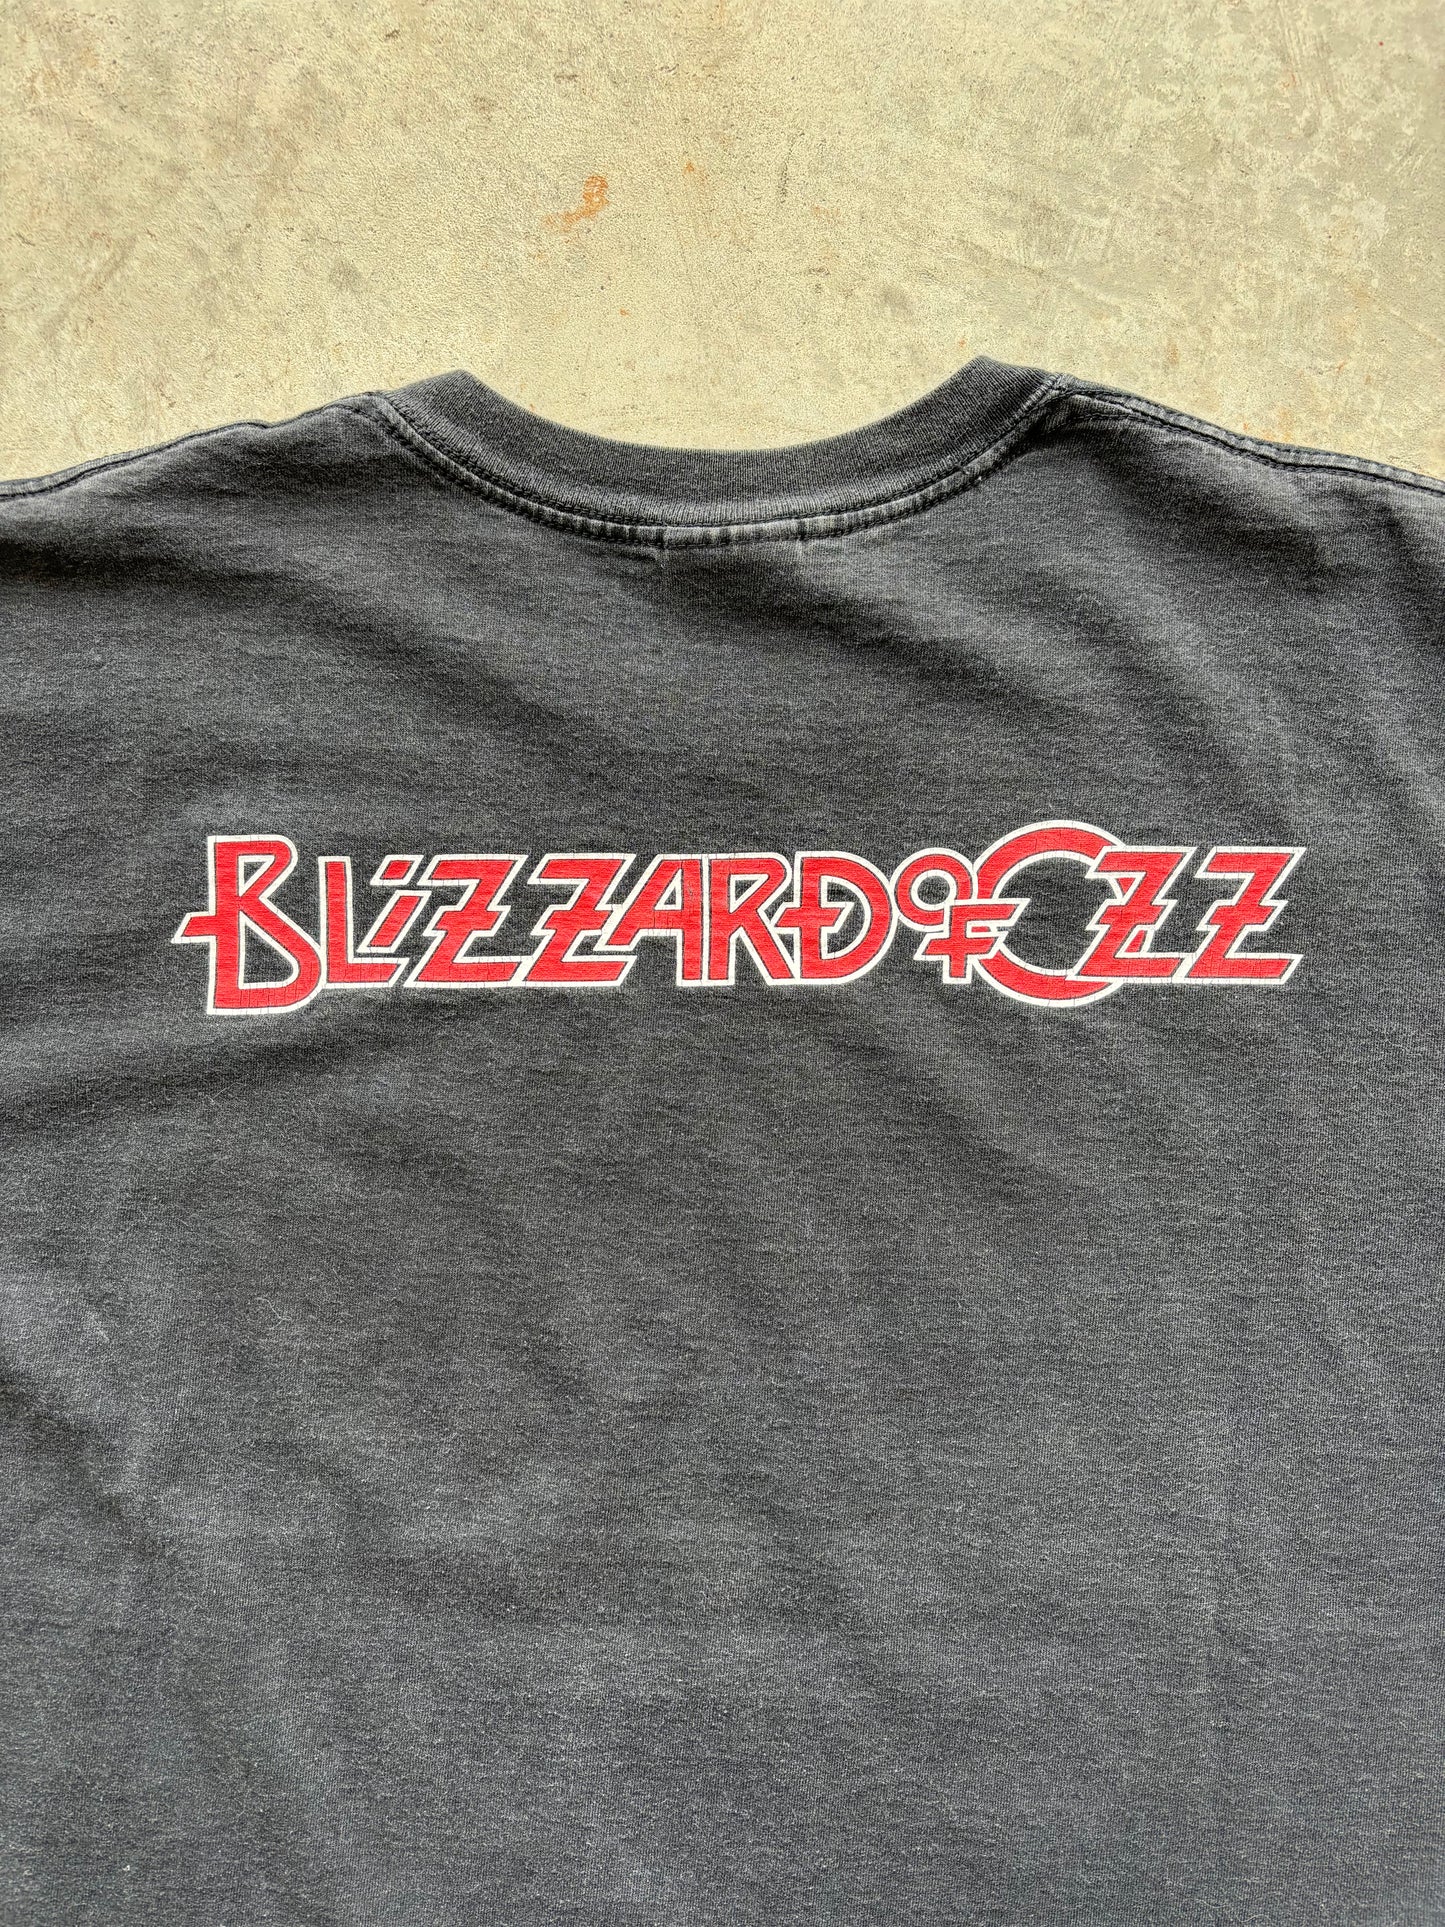 Early 2000's Ozzy Osbourne Blizzard of Ozz Tee Size XL